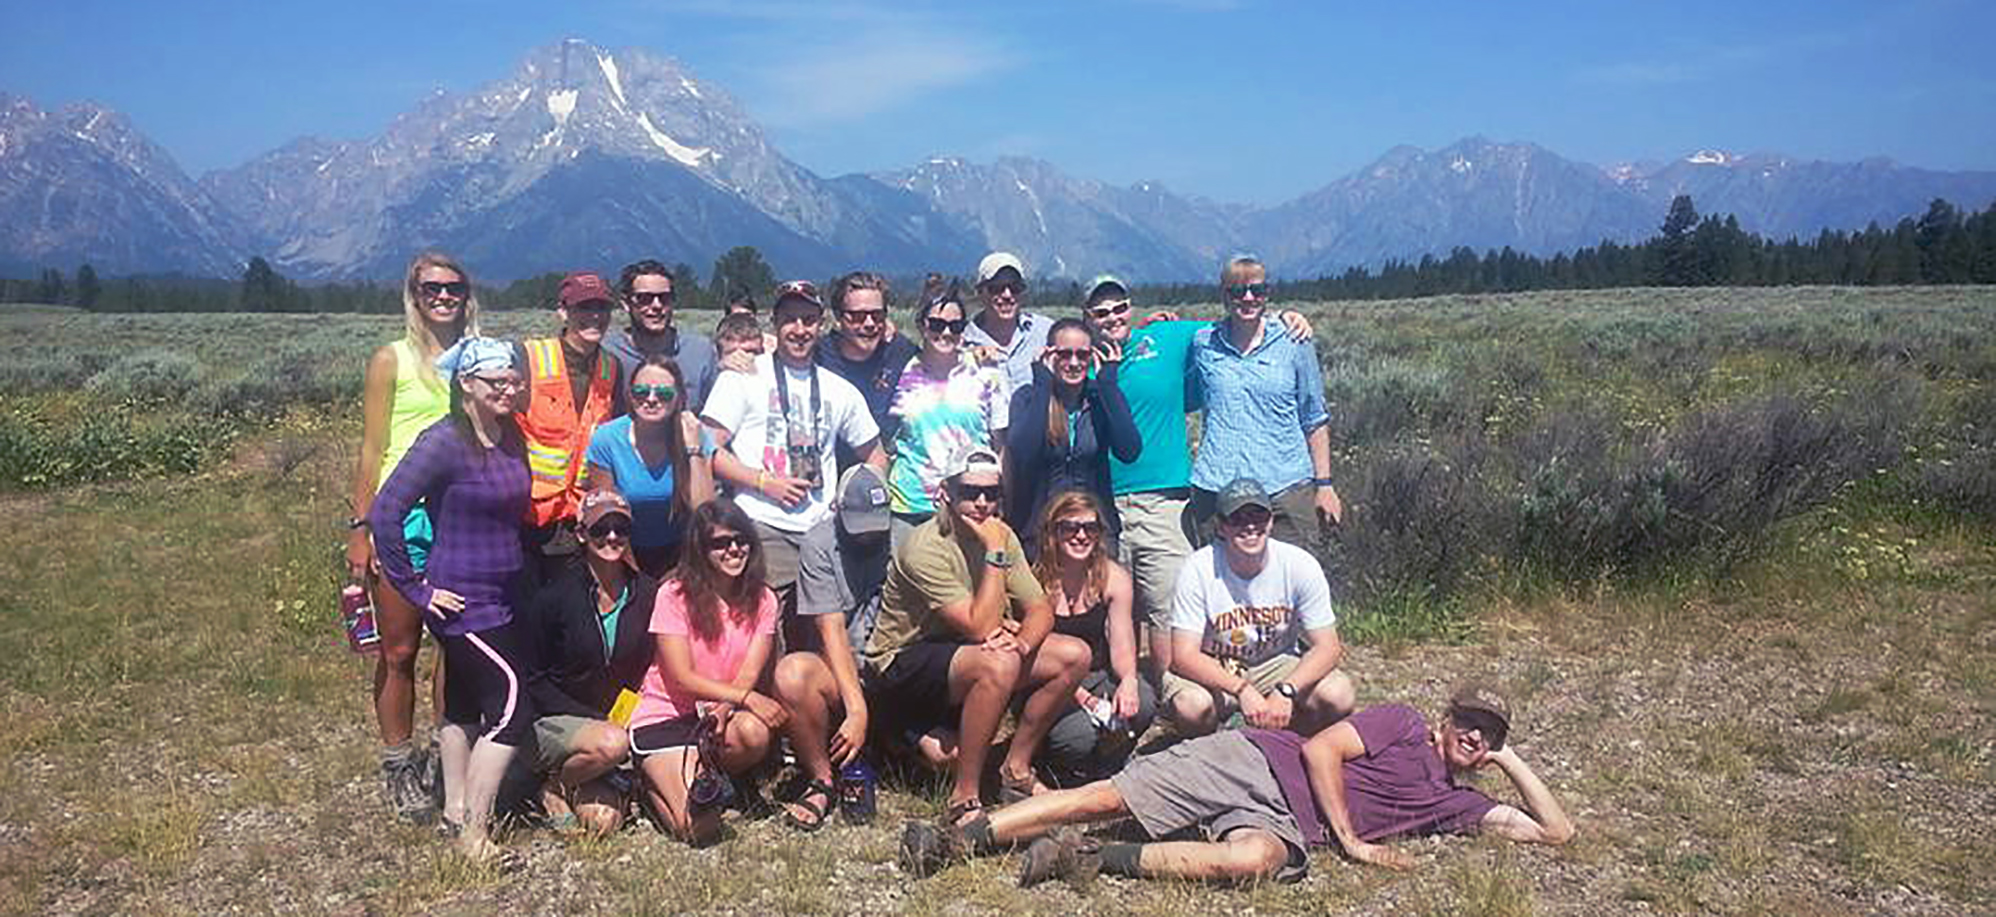 Field Camp Group at Grand Teton